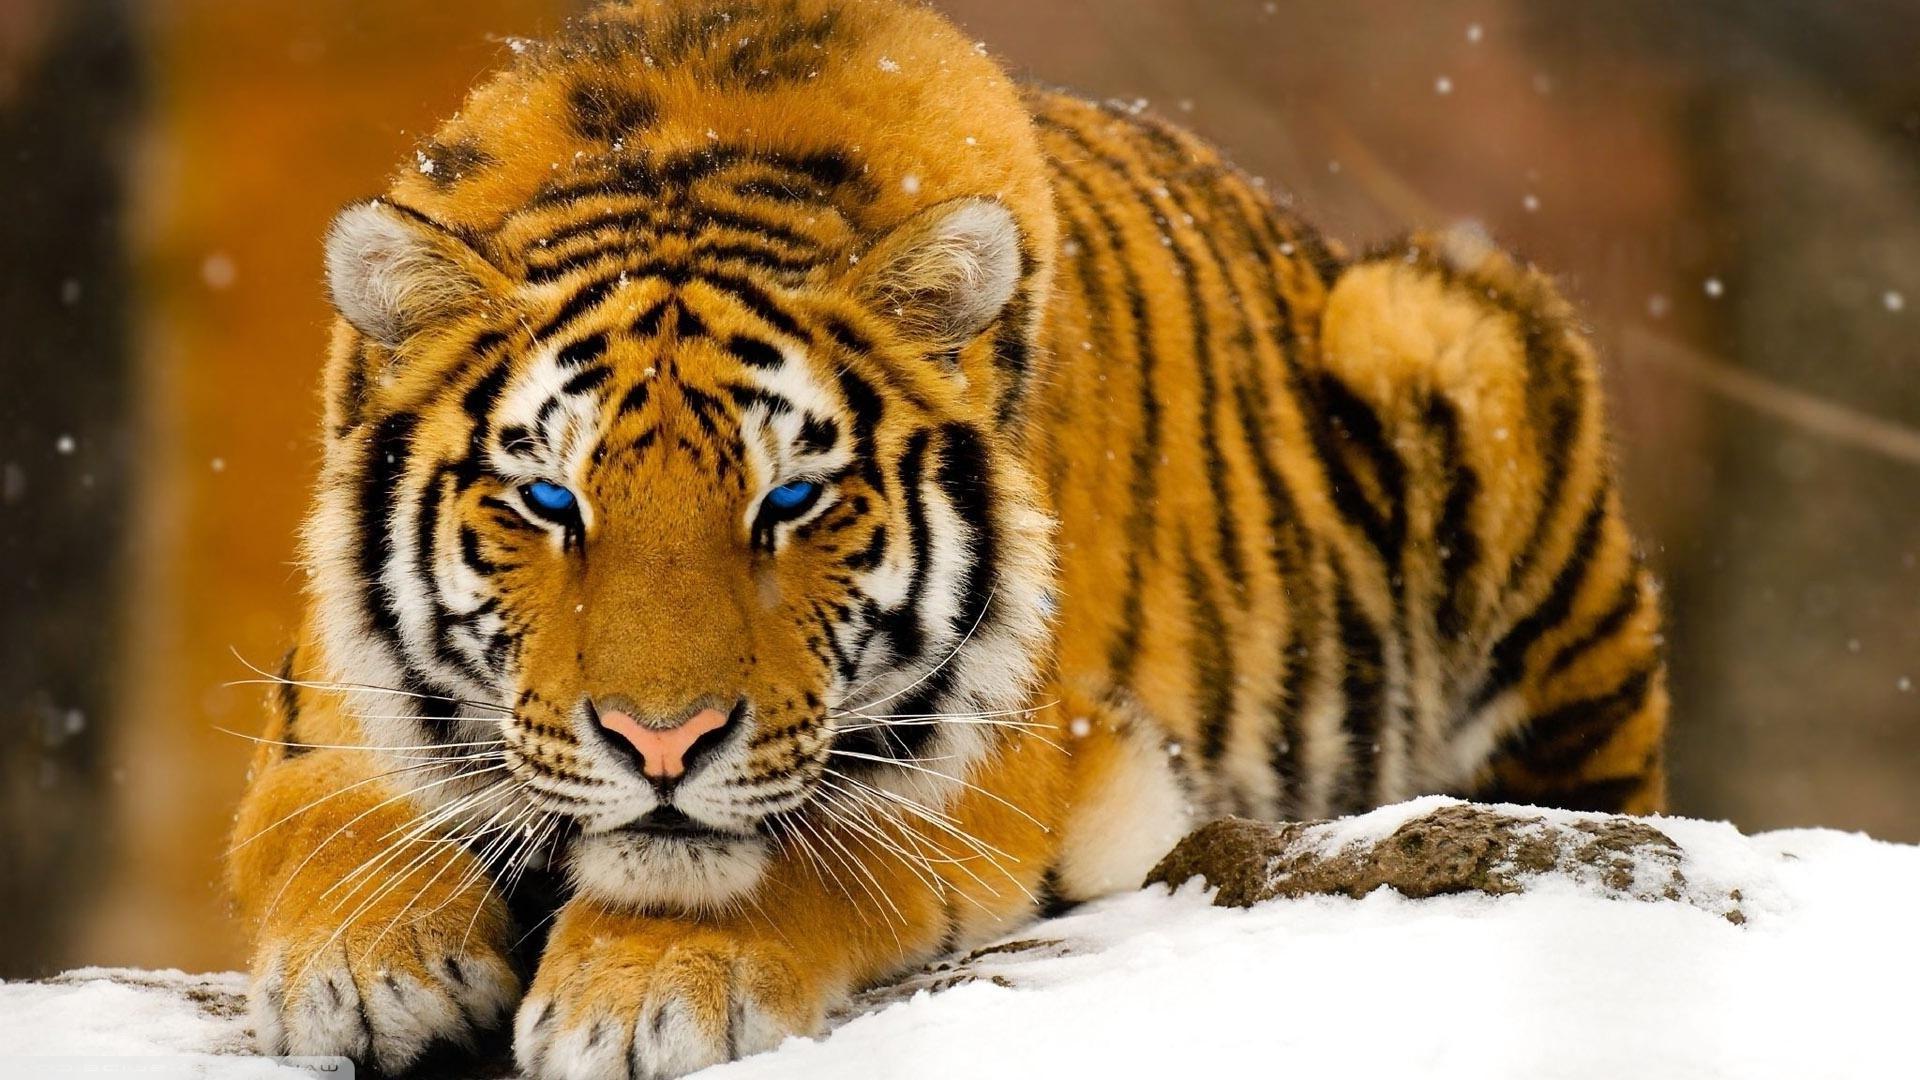 Tiger In Snow HD Wallpaper | 1920x1080 | ID:47927